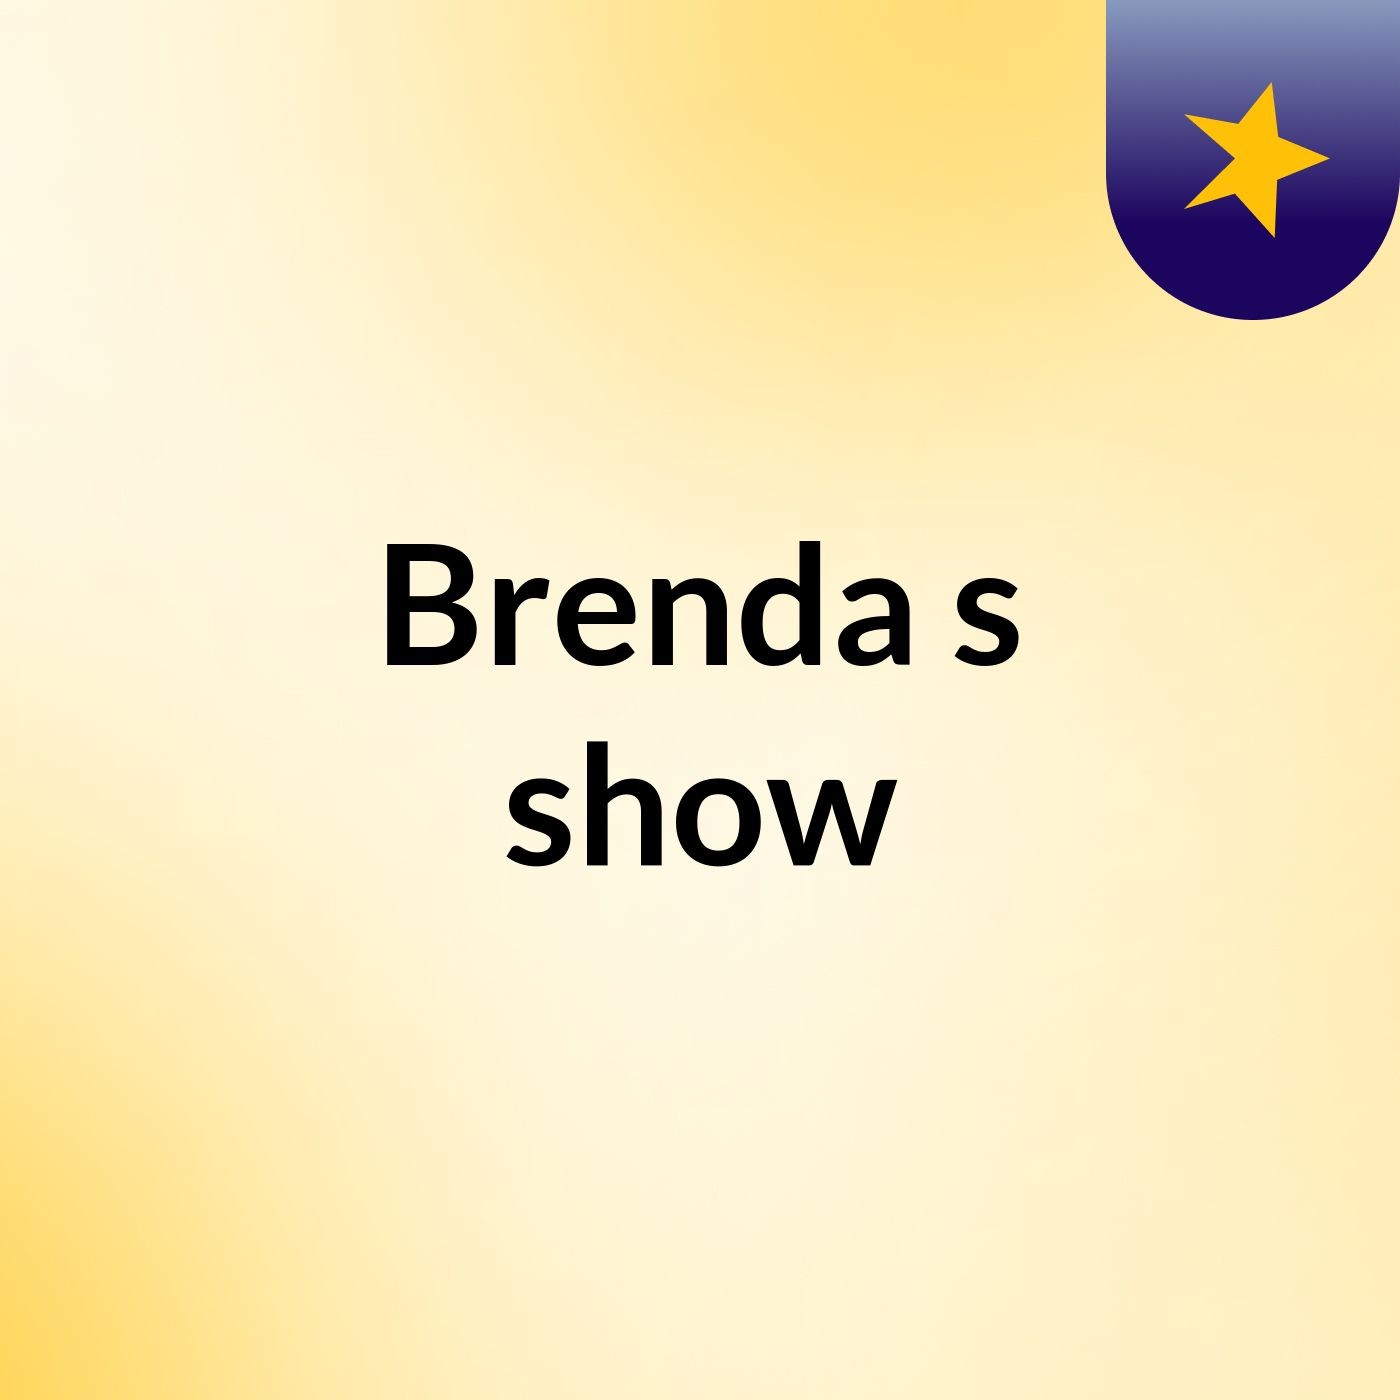 Brenda's show